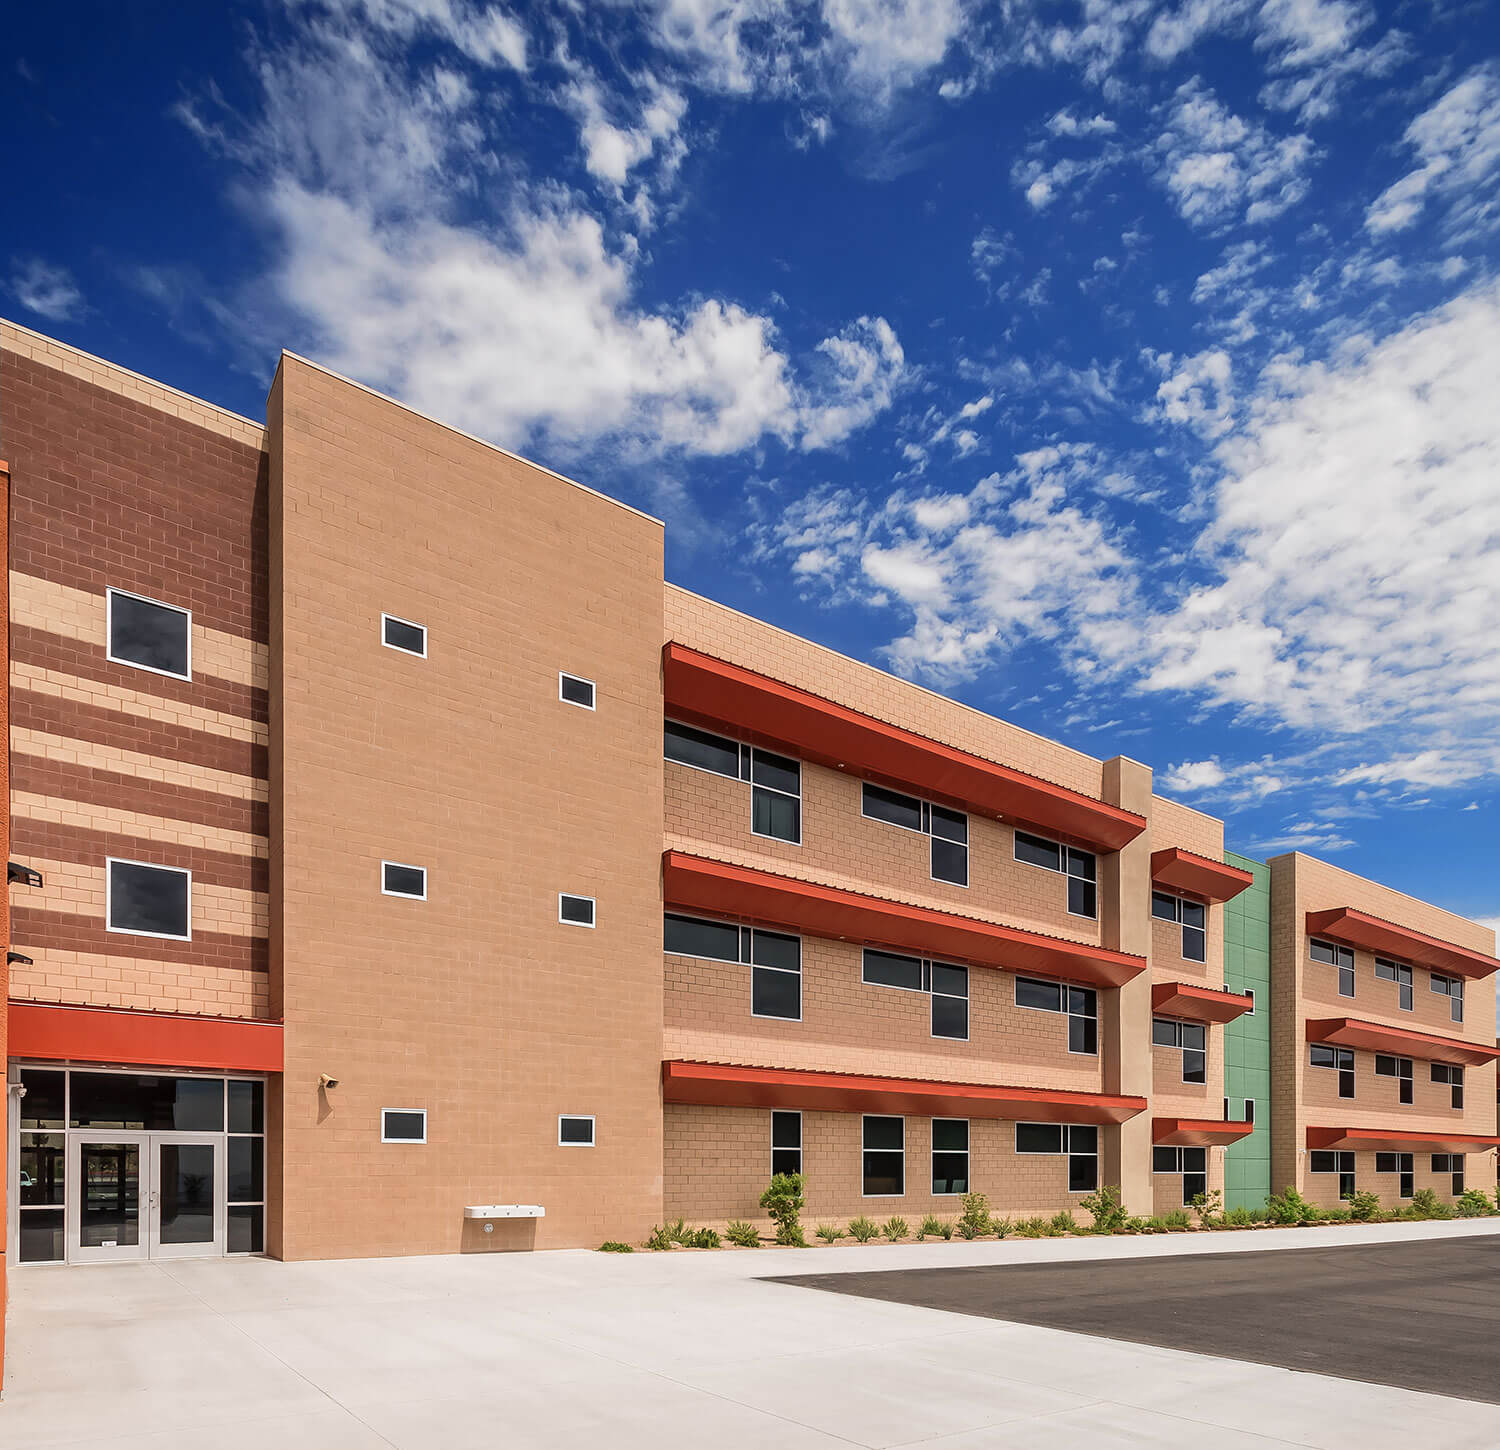 Doral Academy Red Rock Campus K-12 Las Vegas, NV